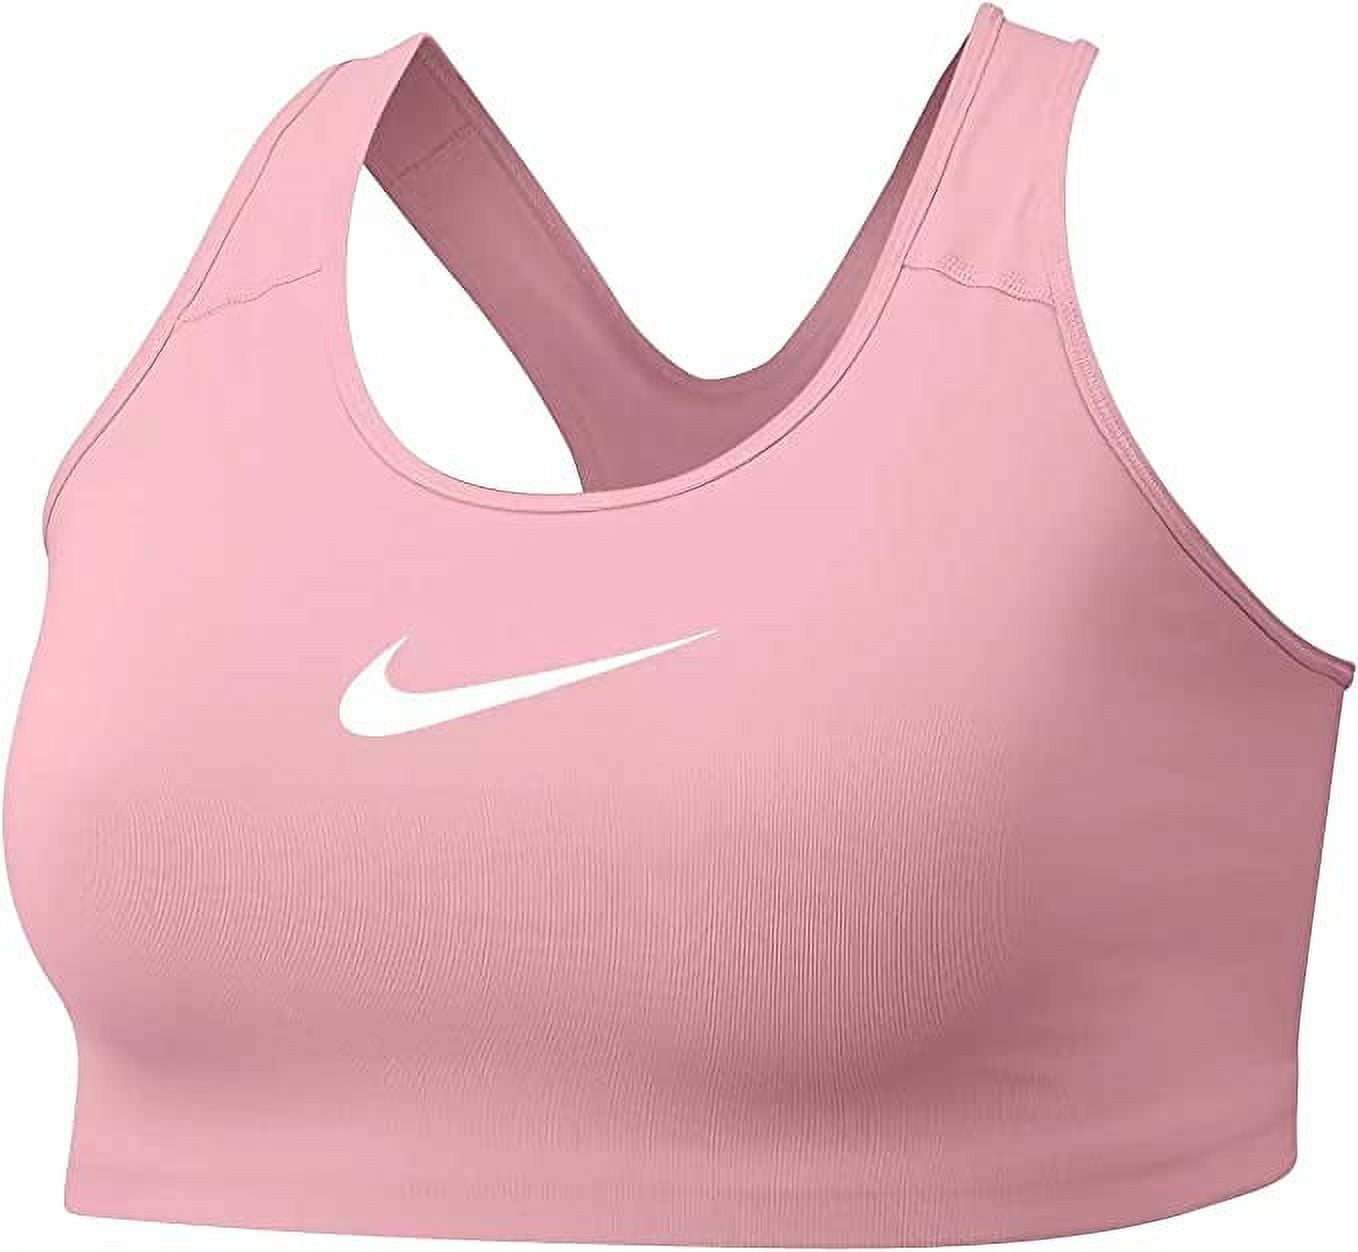 Nike Women's Dri Fit Medium Support Sports Bra Pink Size 2X 